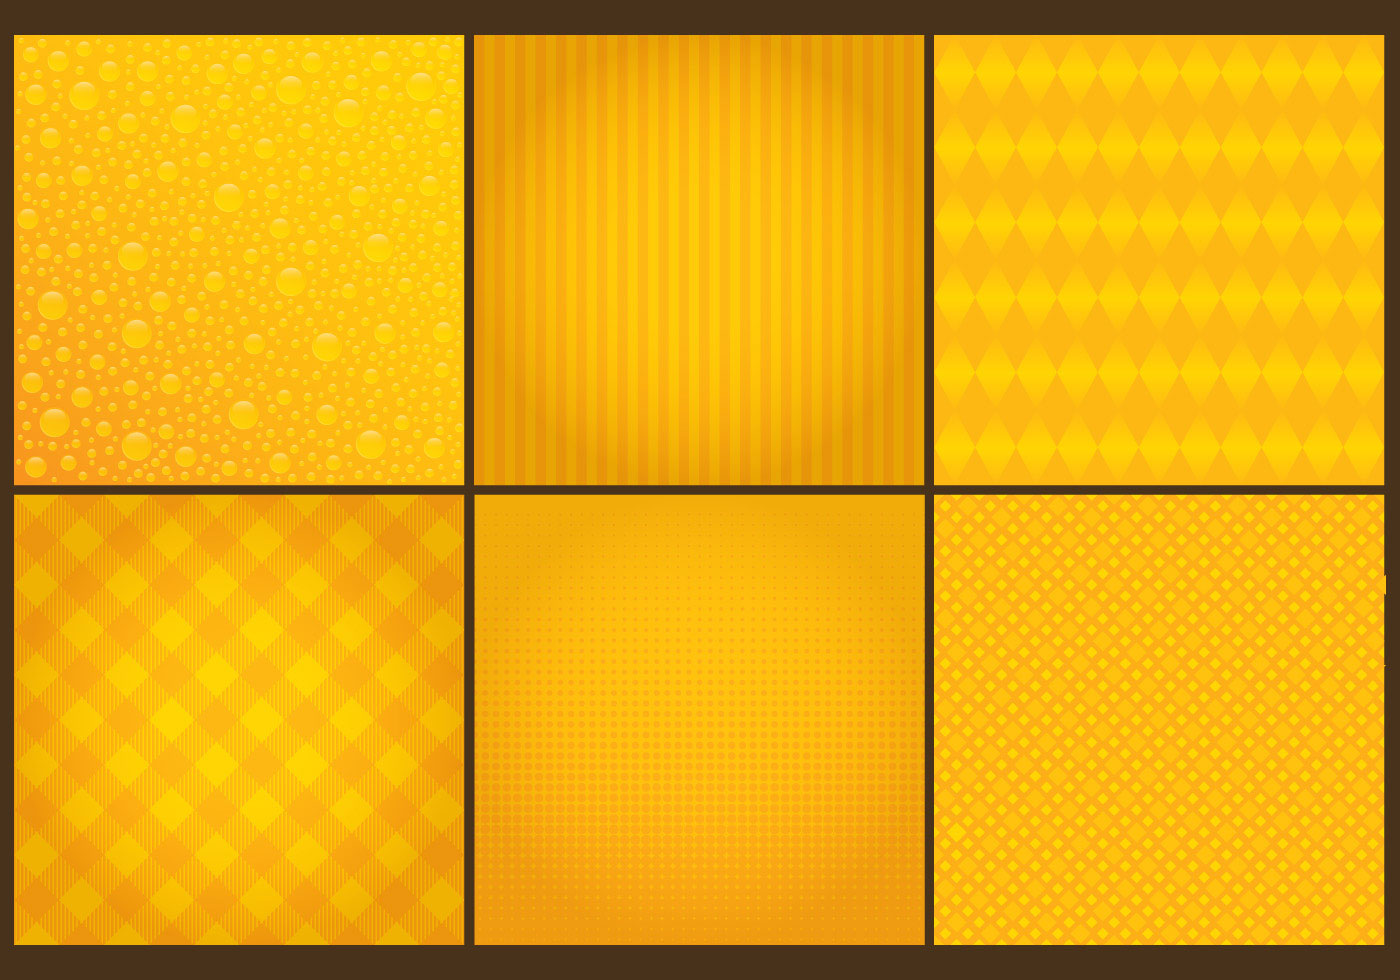 Yellow Background Vectors - Download Free Vector Art ...